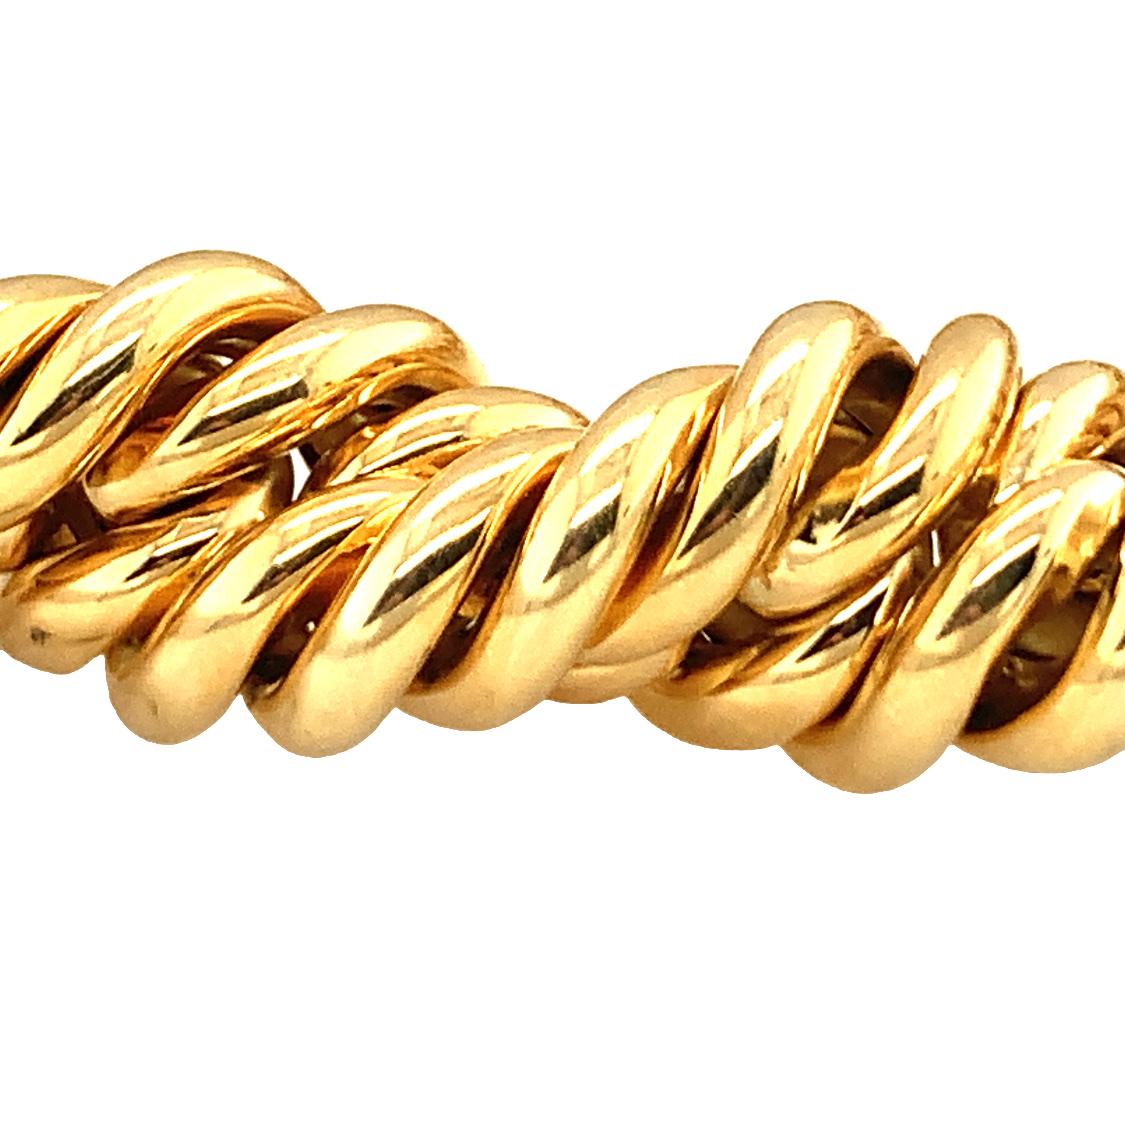 Ein Seil Twist Design, Hochglanz 18K Gelbgold Halskette mit einer Breite von 16 Millimetern. Erhebliches Gewicht und schwere Ausführung.  Mess 16,75 Zoll in der Länge.

Grandios, stark, massiv.

Metall: 18K Gelbgold
Circa: 1970er